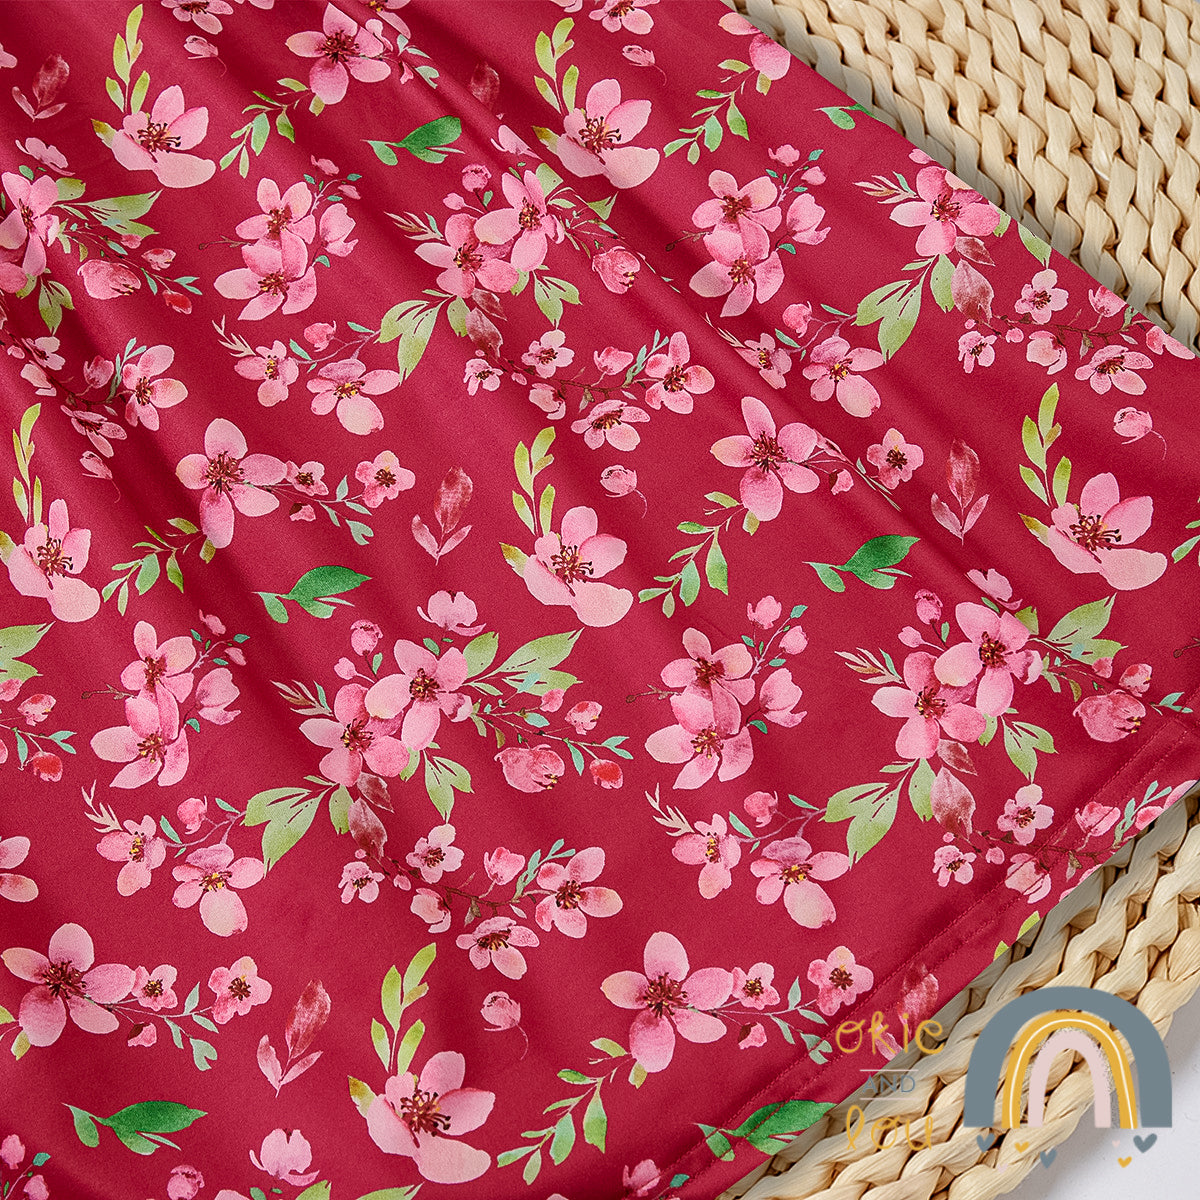 PREORDER: Dewberry Garden - Mom Dress